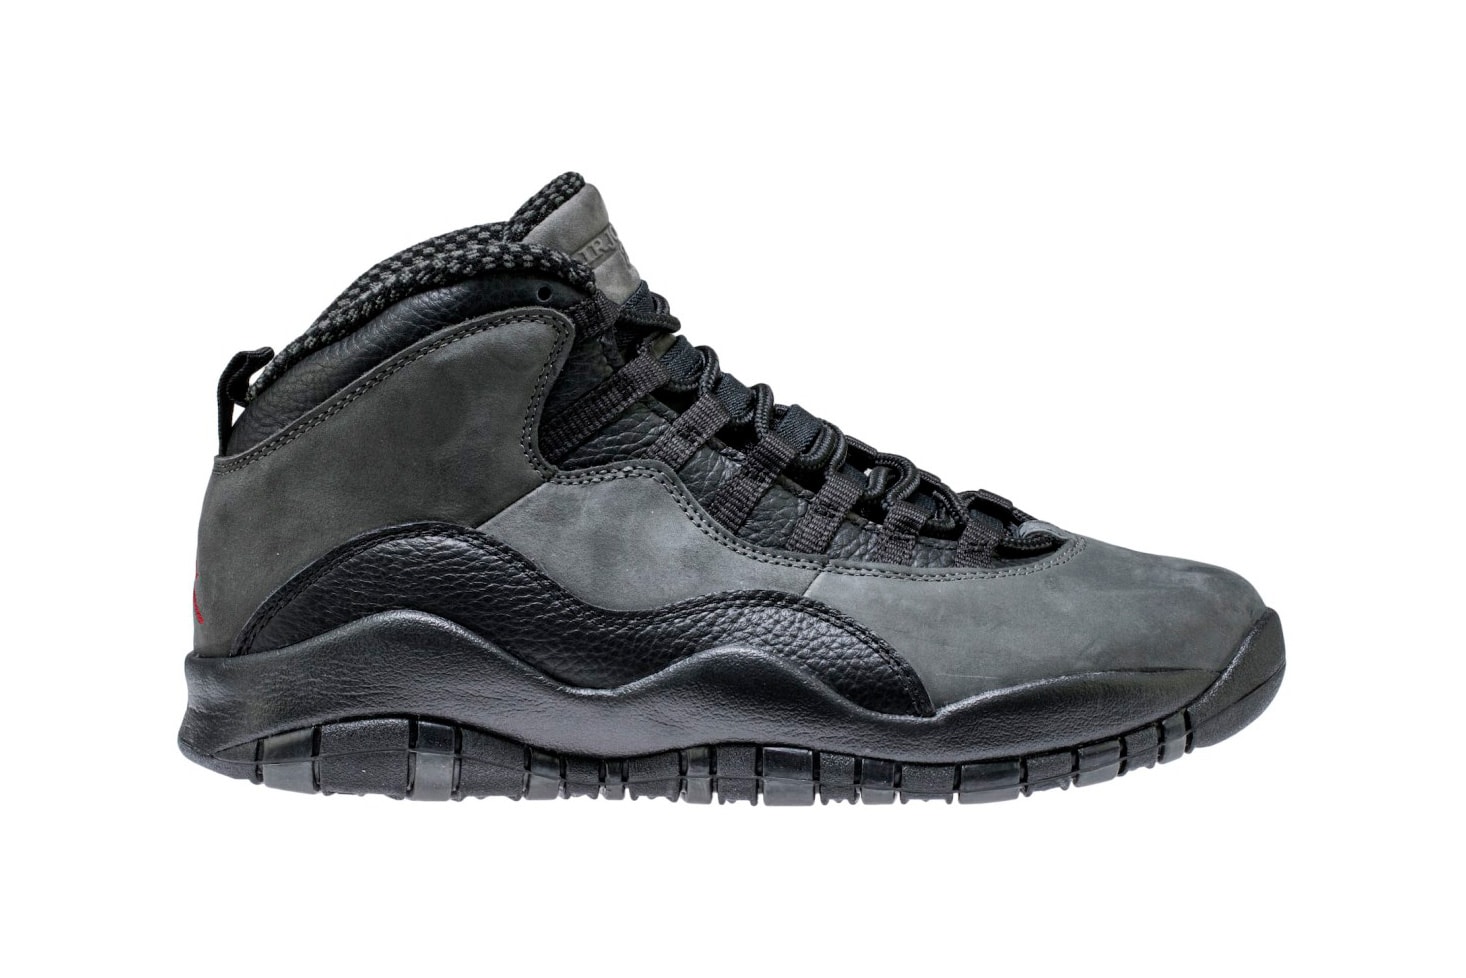 Air Jordan 10 Shadow Returns Next Month Jordan Brand Michael Jordan release dates april 2018 footwear